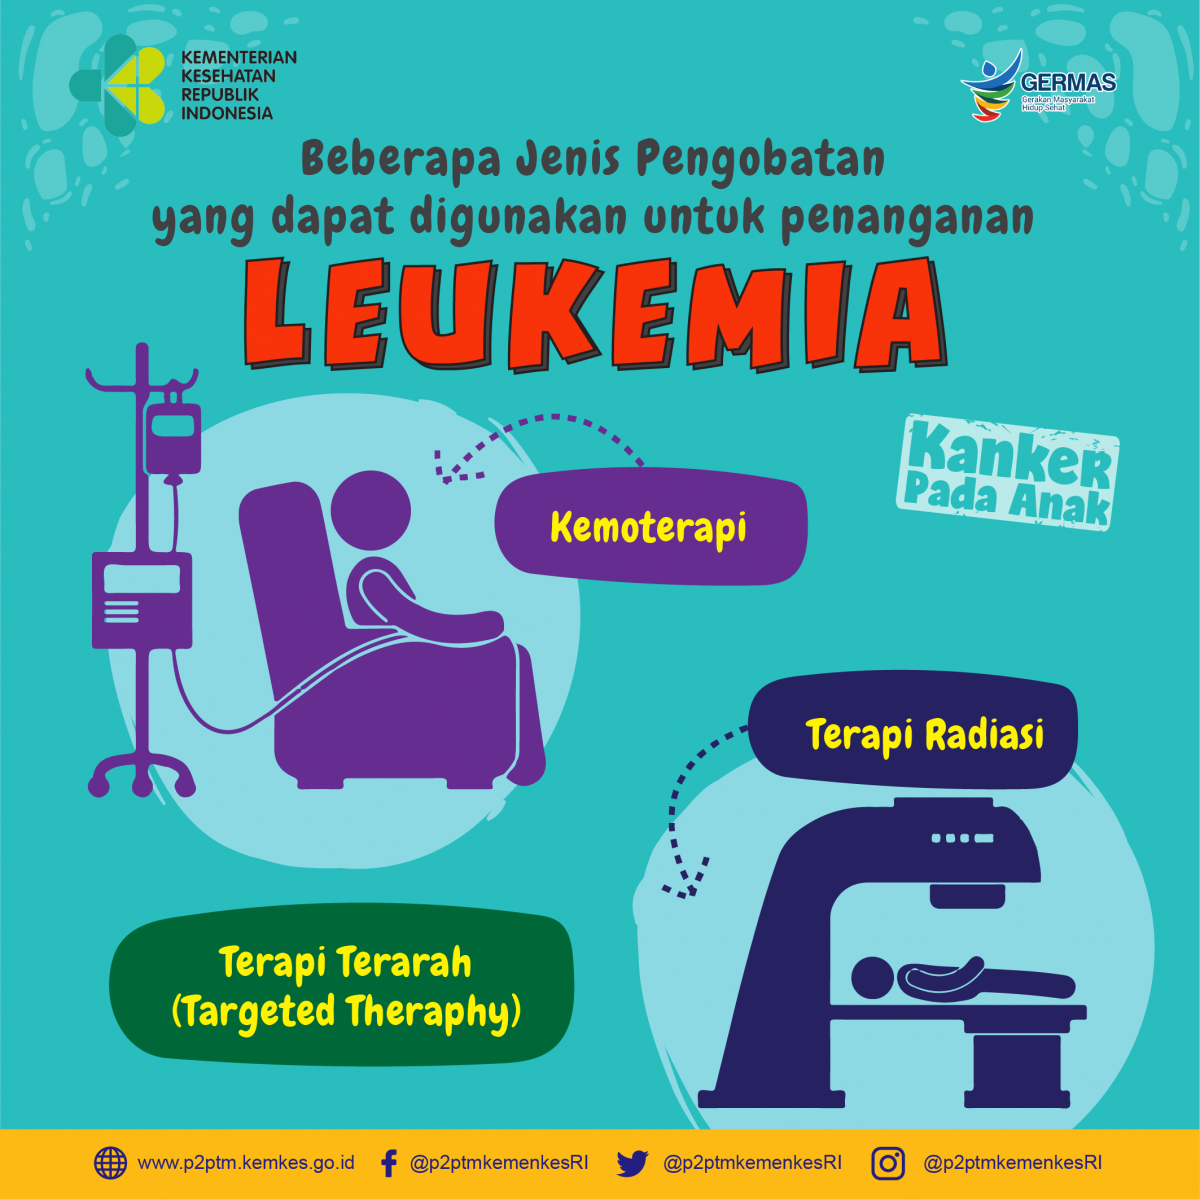 Penyebab leukemia